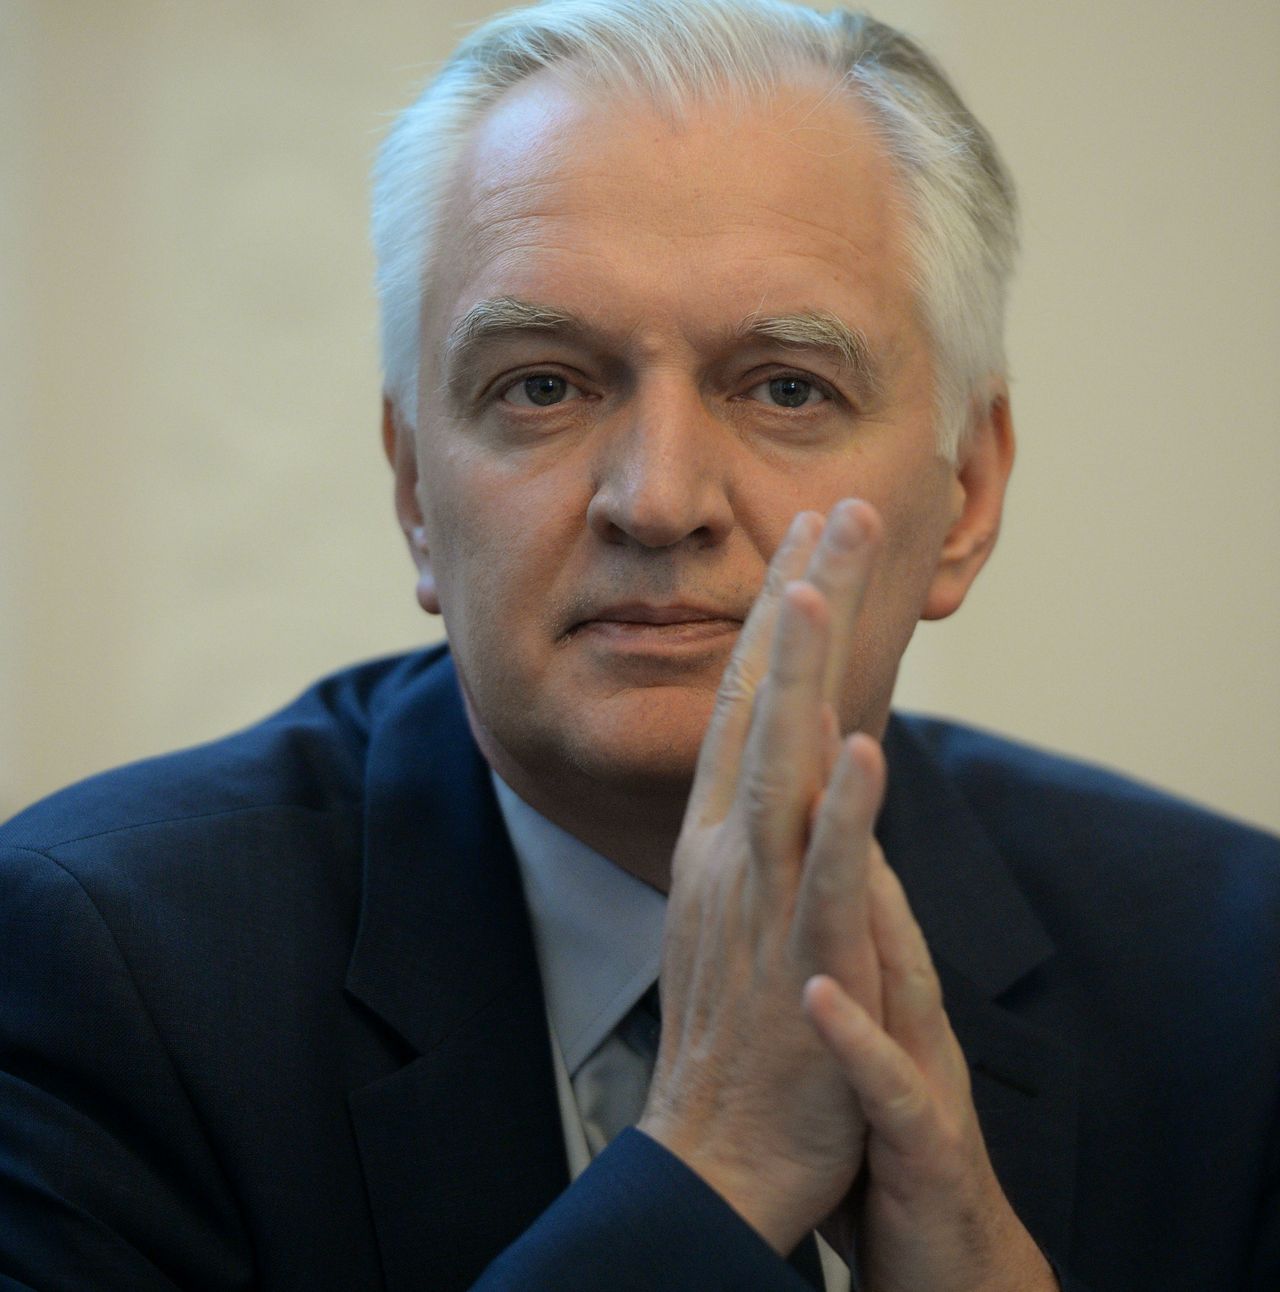 Wicepremier Jarosław Gowin: dedukuję jak Sherlock Holmes. Prezydent zgłosi uwagi do poprawek PiS